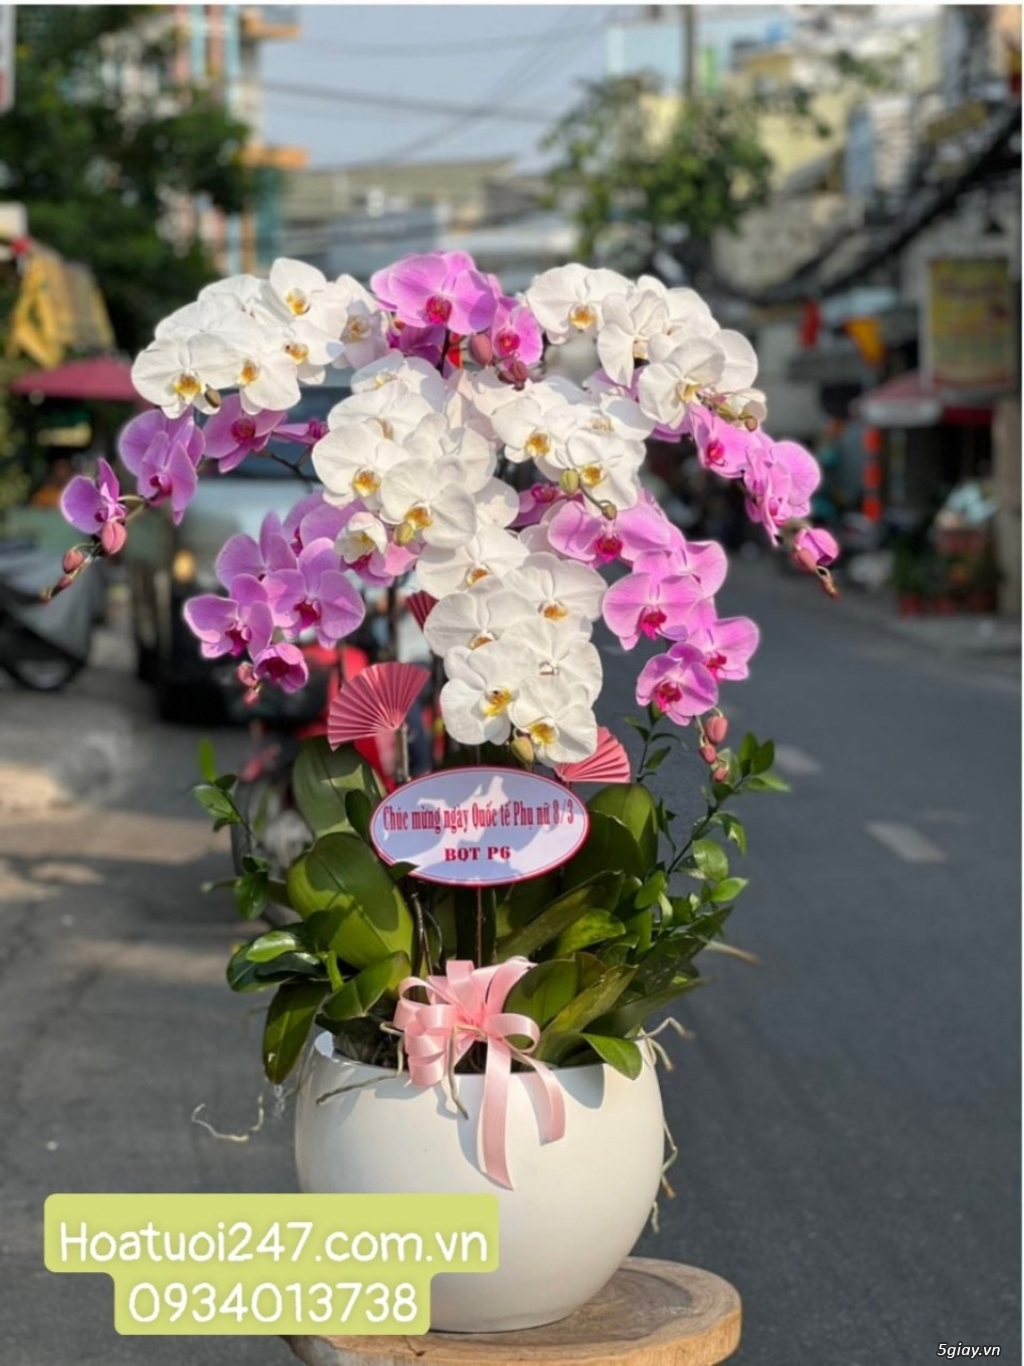 Vườn hoa tươi Lan Hồ Điệp 247 ấn tượng giữa lòng Sài Gòn